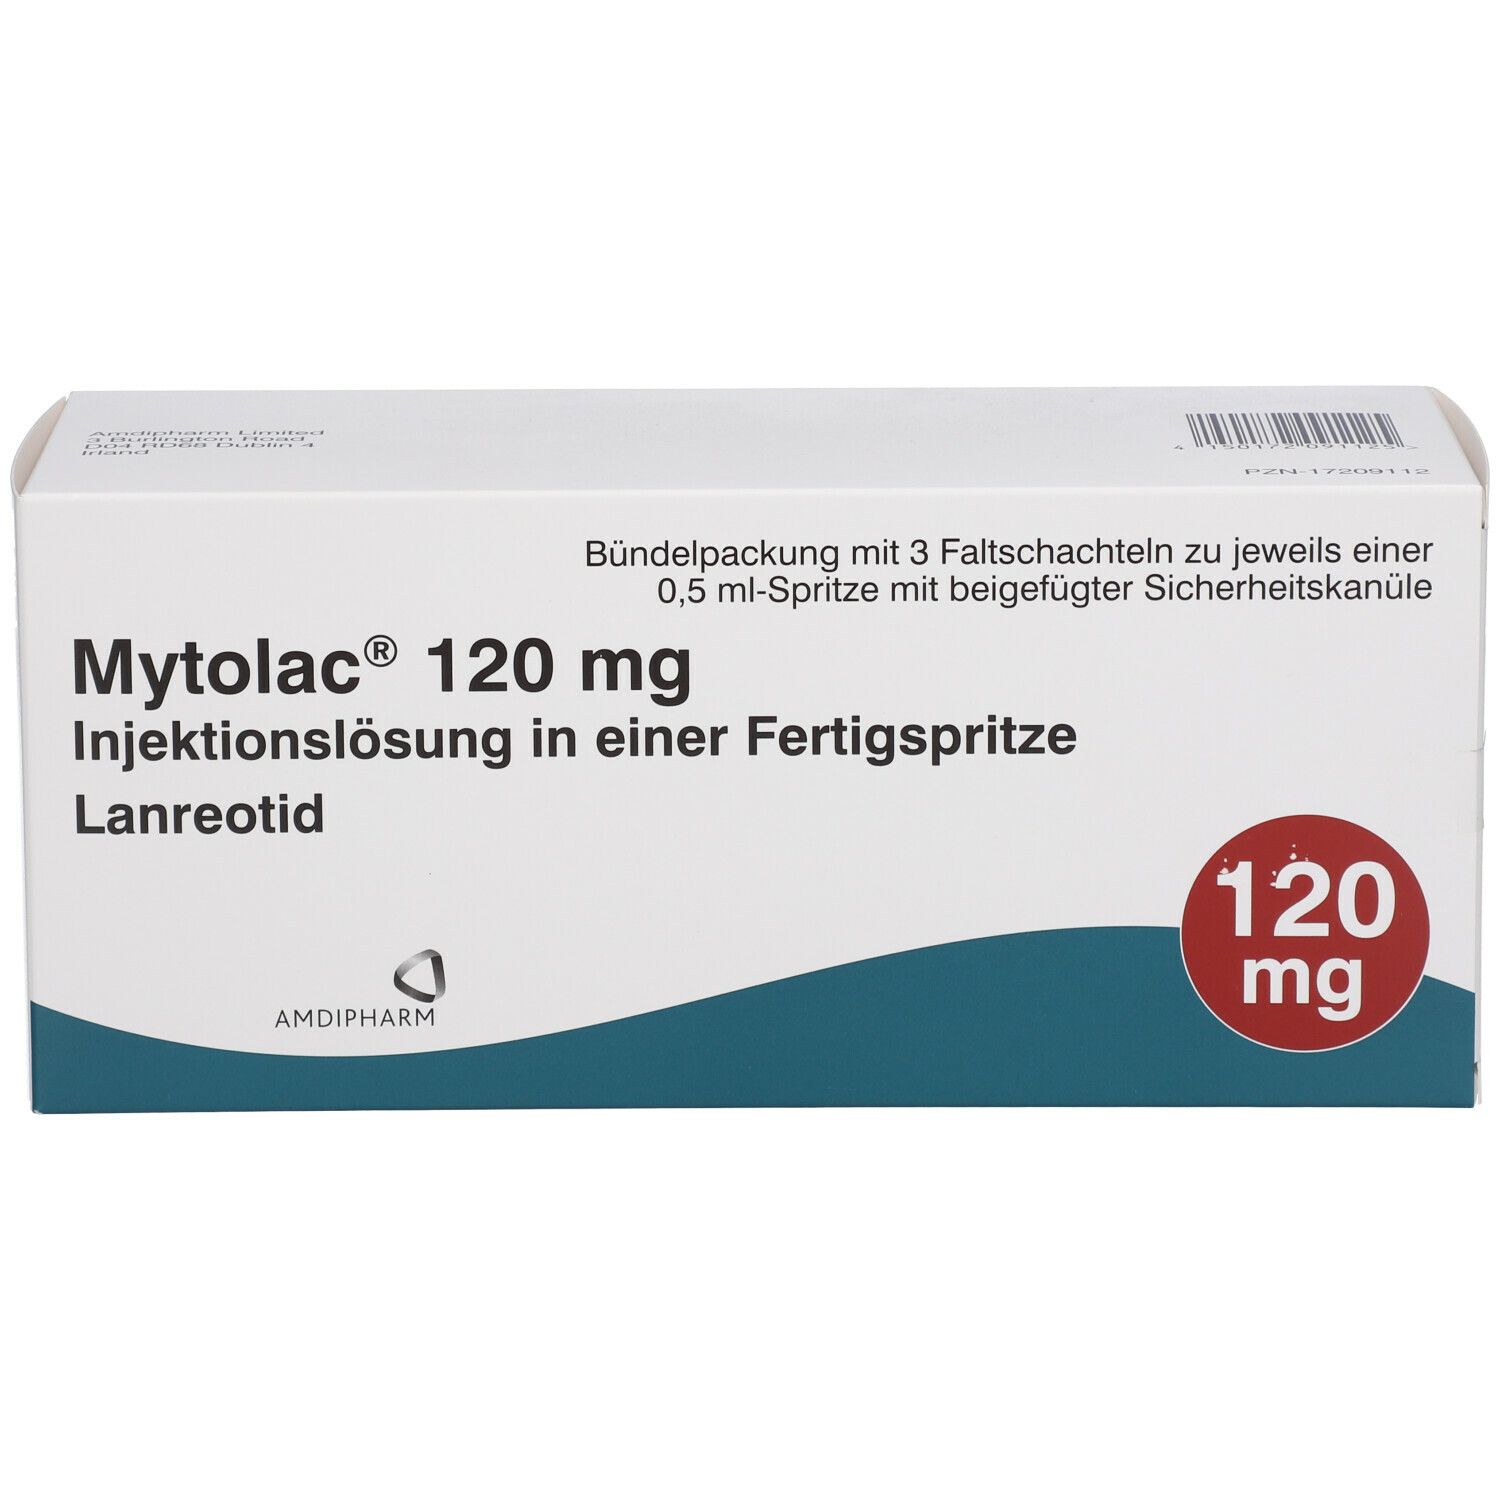 Mytolac® 120 mg